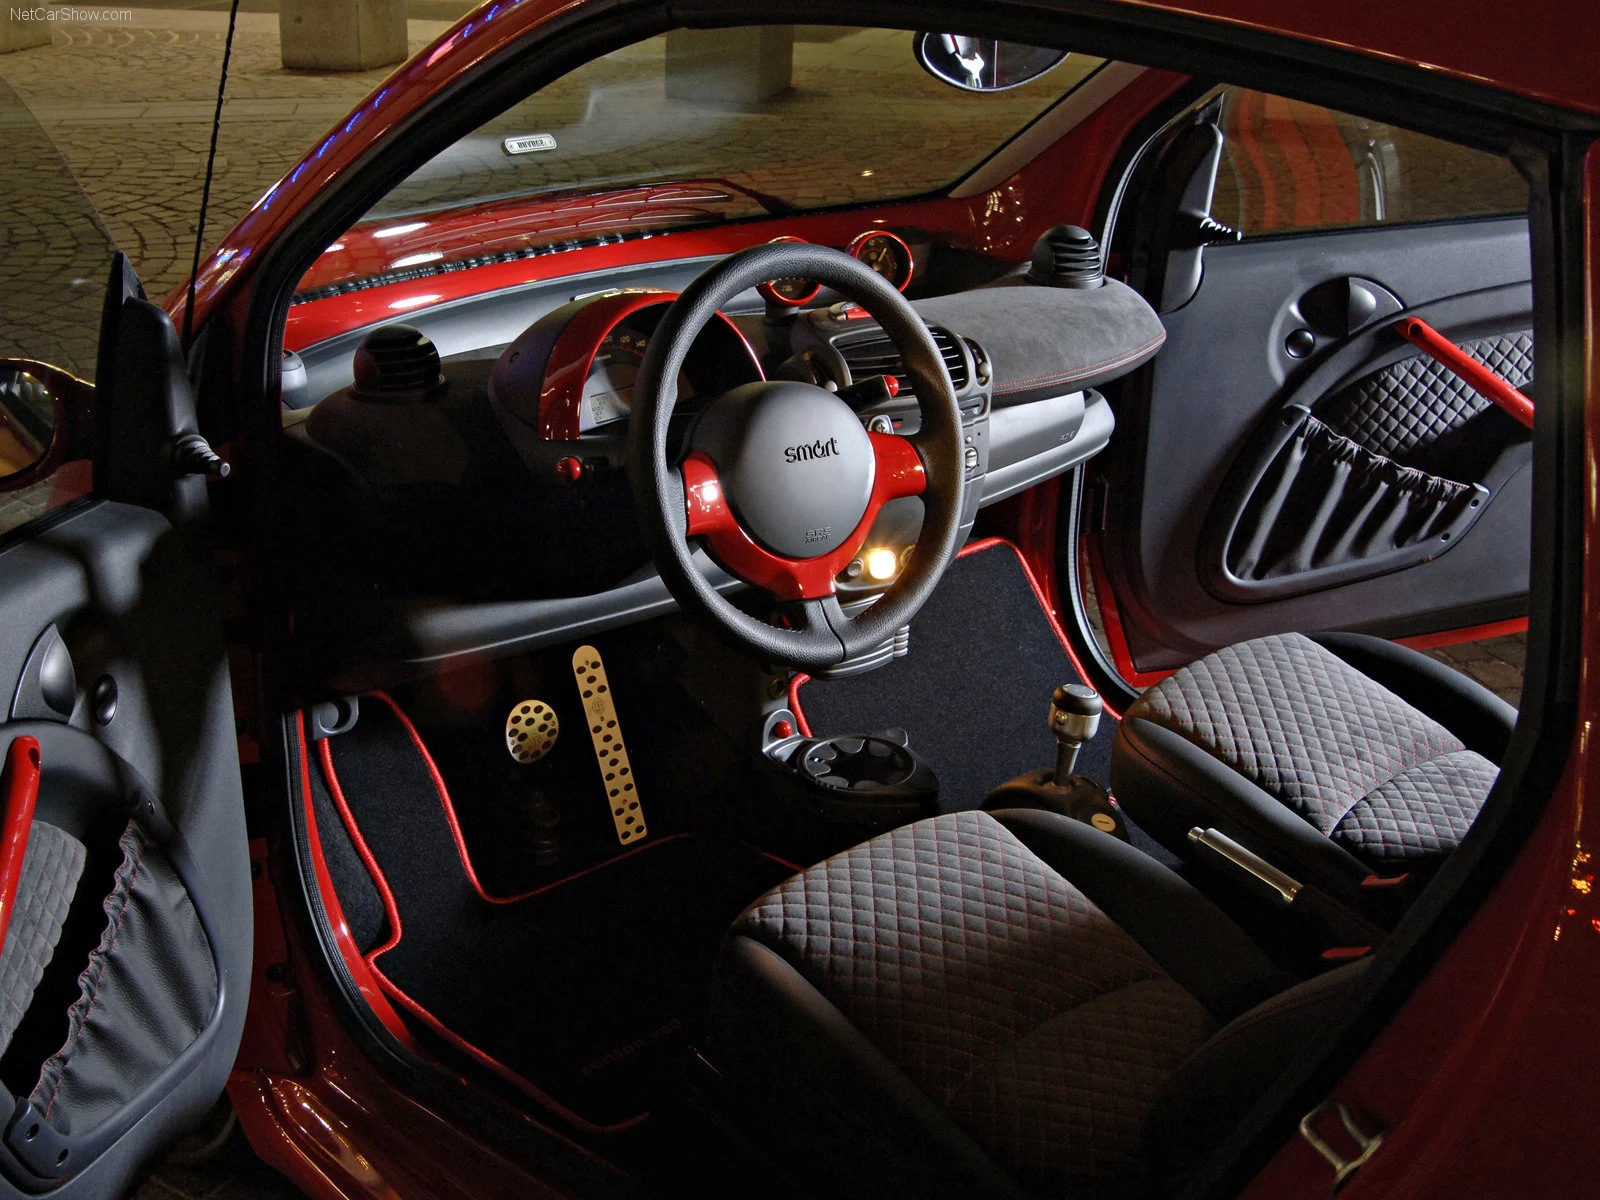 Hình ảnh xe ô tô Smart fortwo edition red 2006 & nội ngoại thất